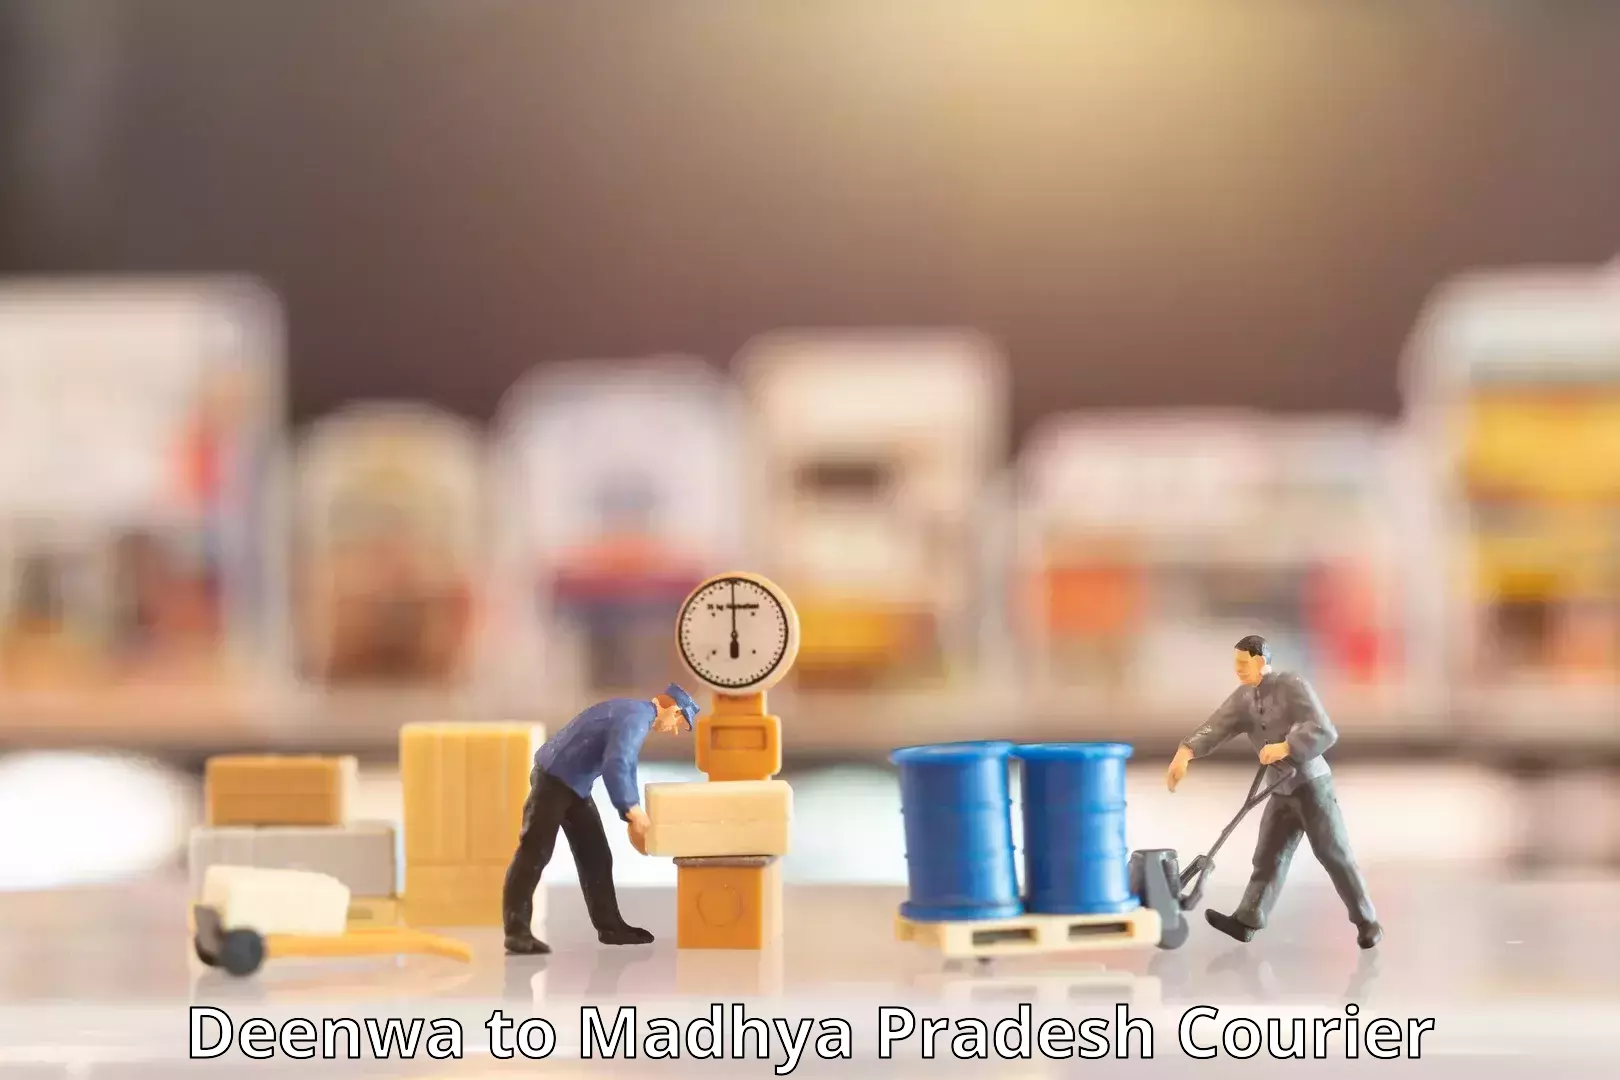 Secure packaging in Deenwa to Madhya Pradesh